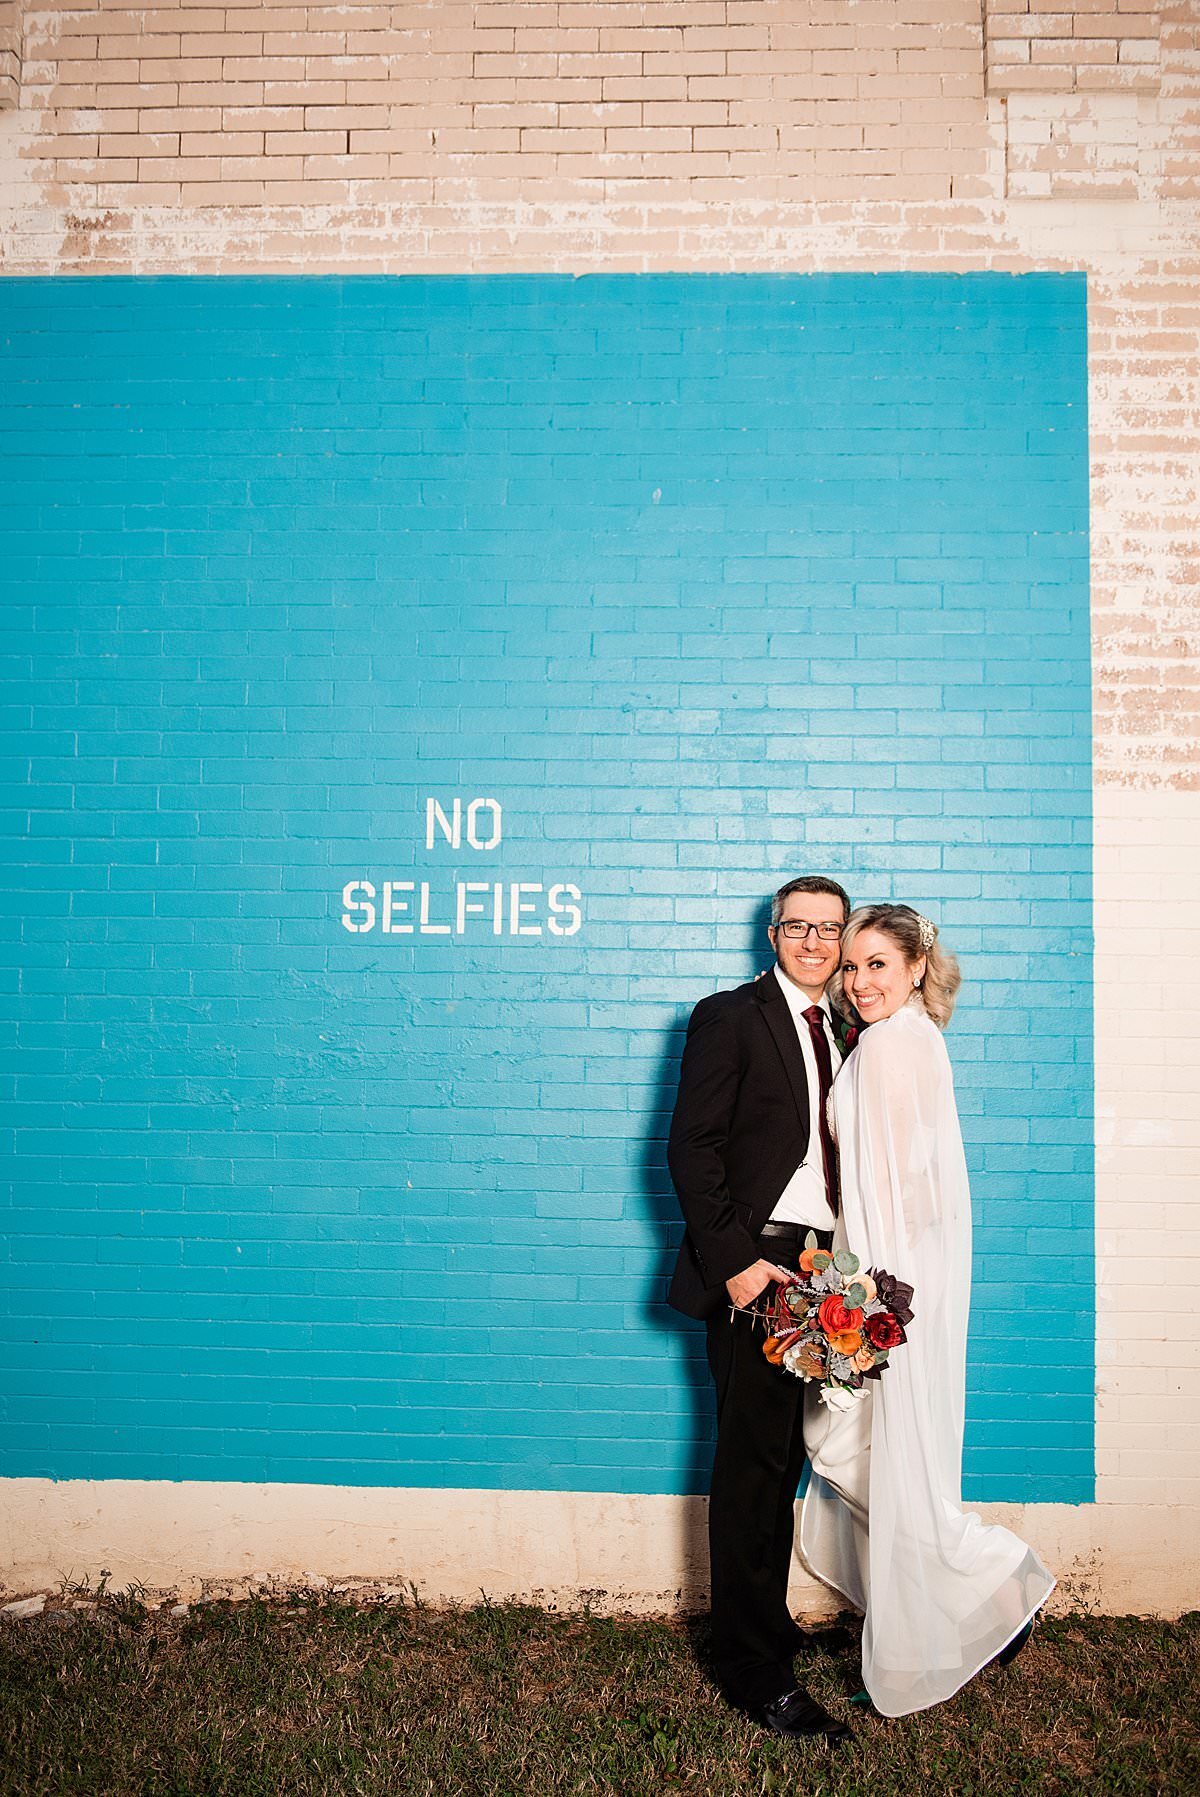 Bride and Groom standing near No Selfies mural